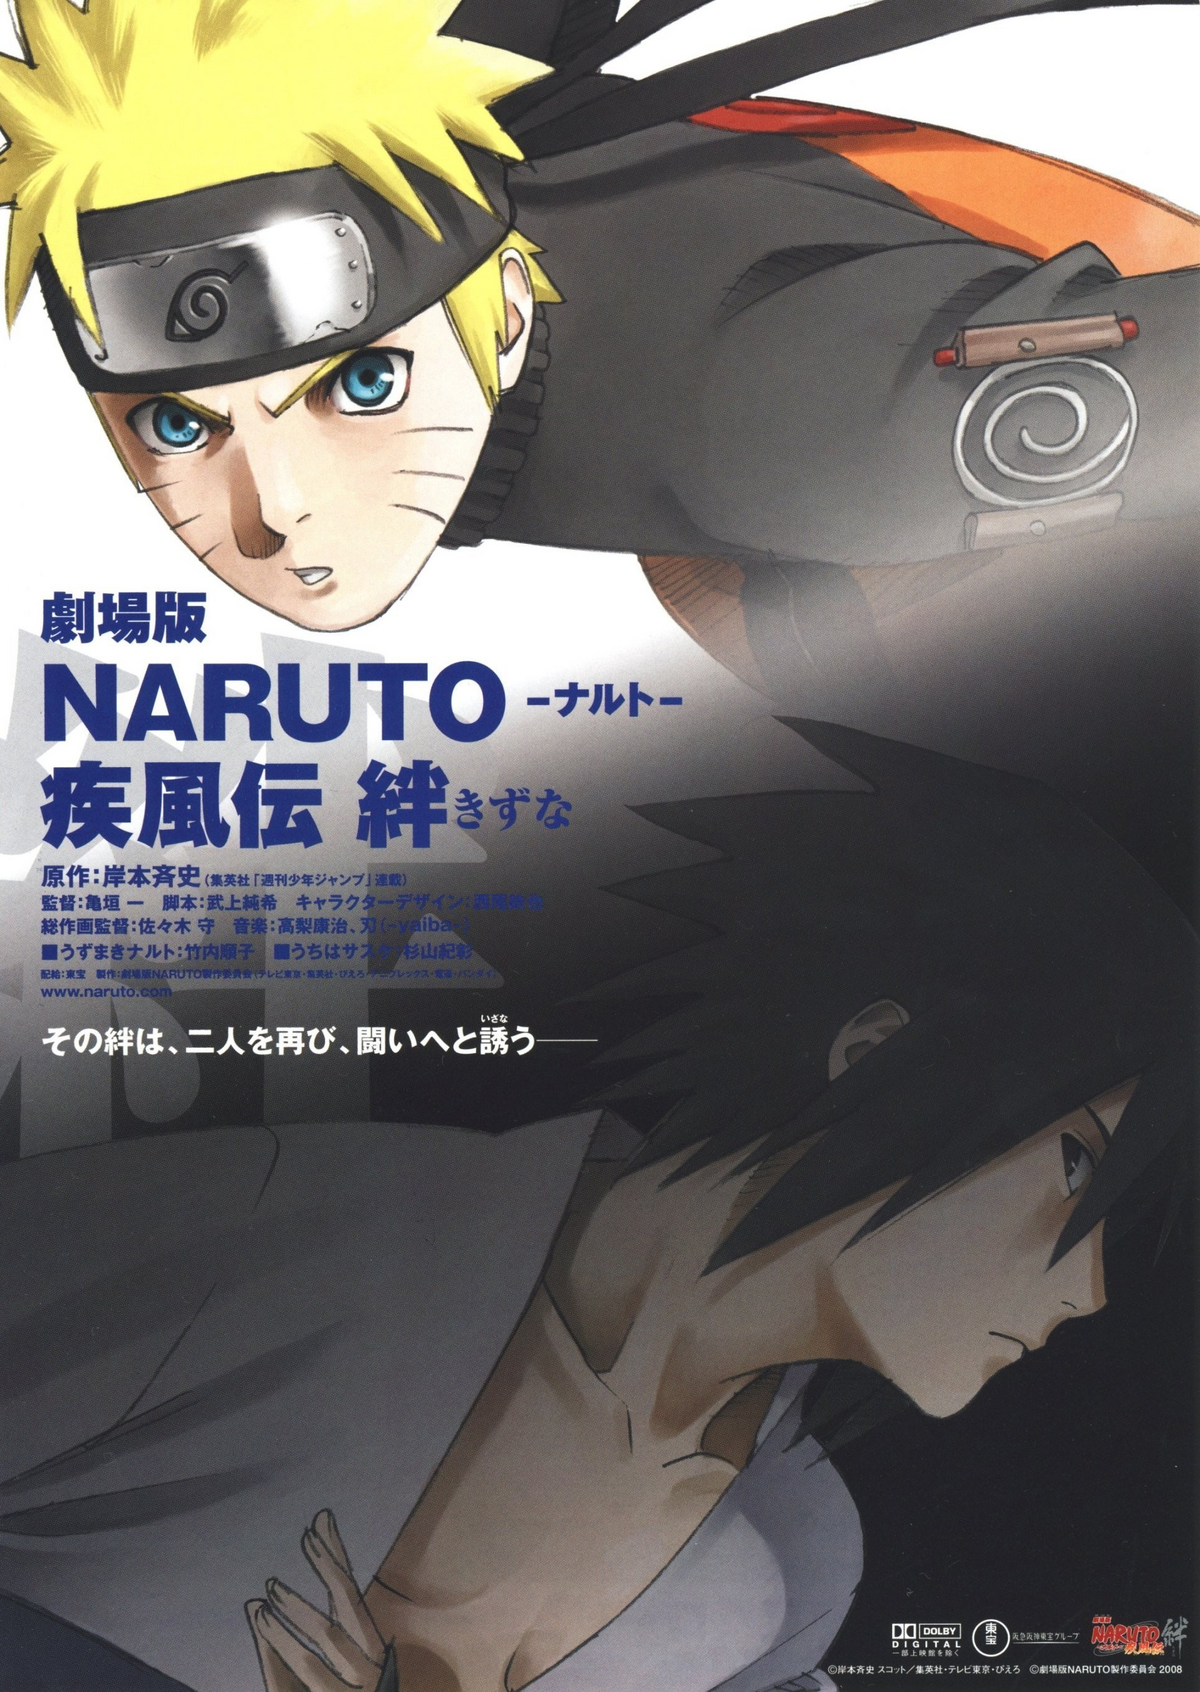 Boruto: Naruto the Movie, Narutopedia